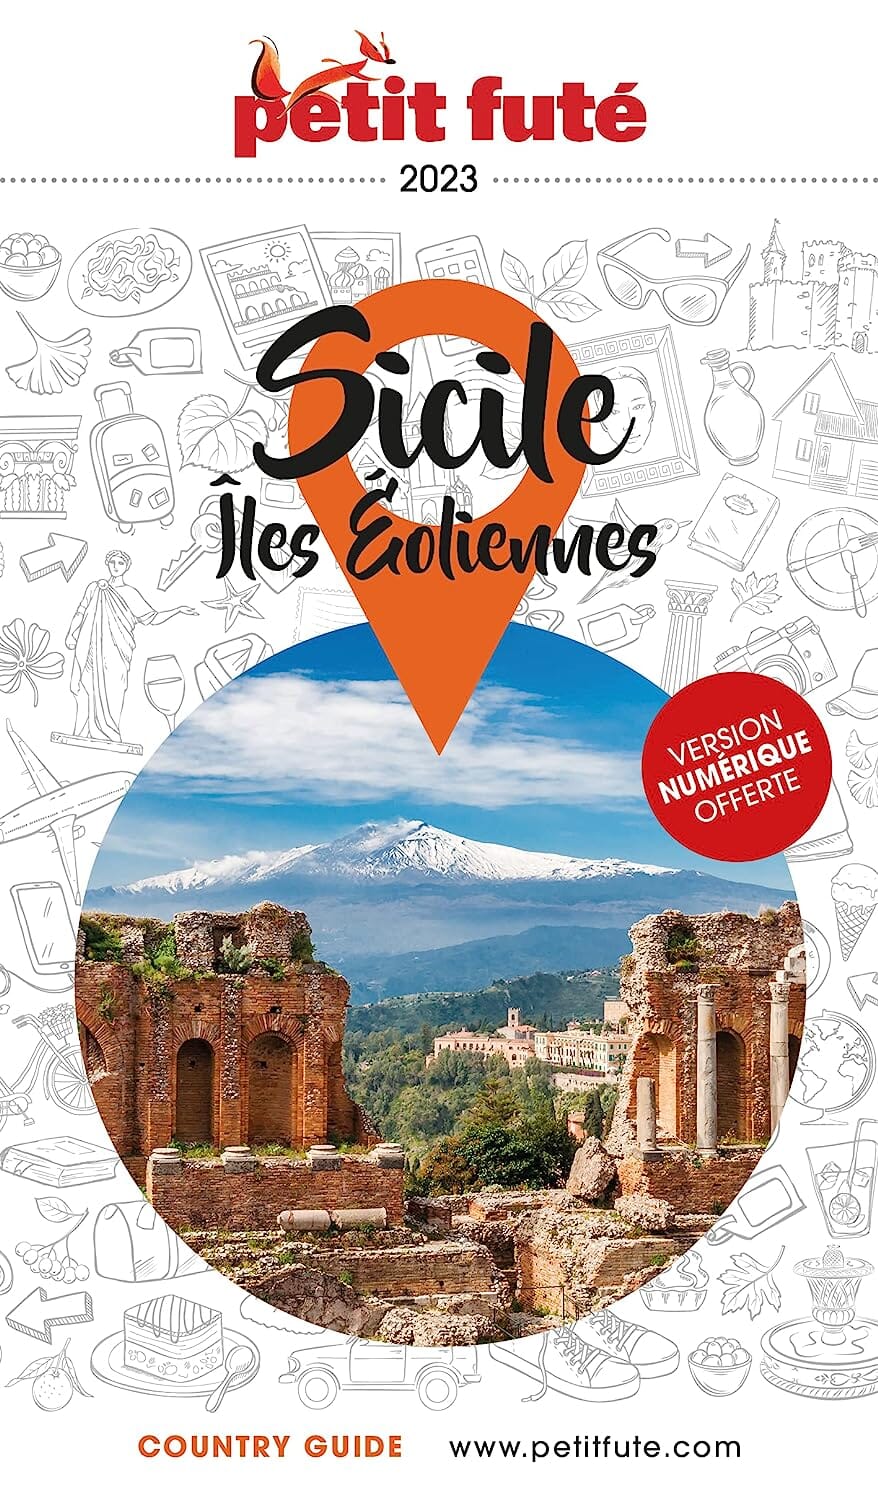 Guide de voyage - Sicile, Iles Eoliennes 2023 | Petit Futé guide de voyage Petit Futé 